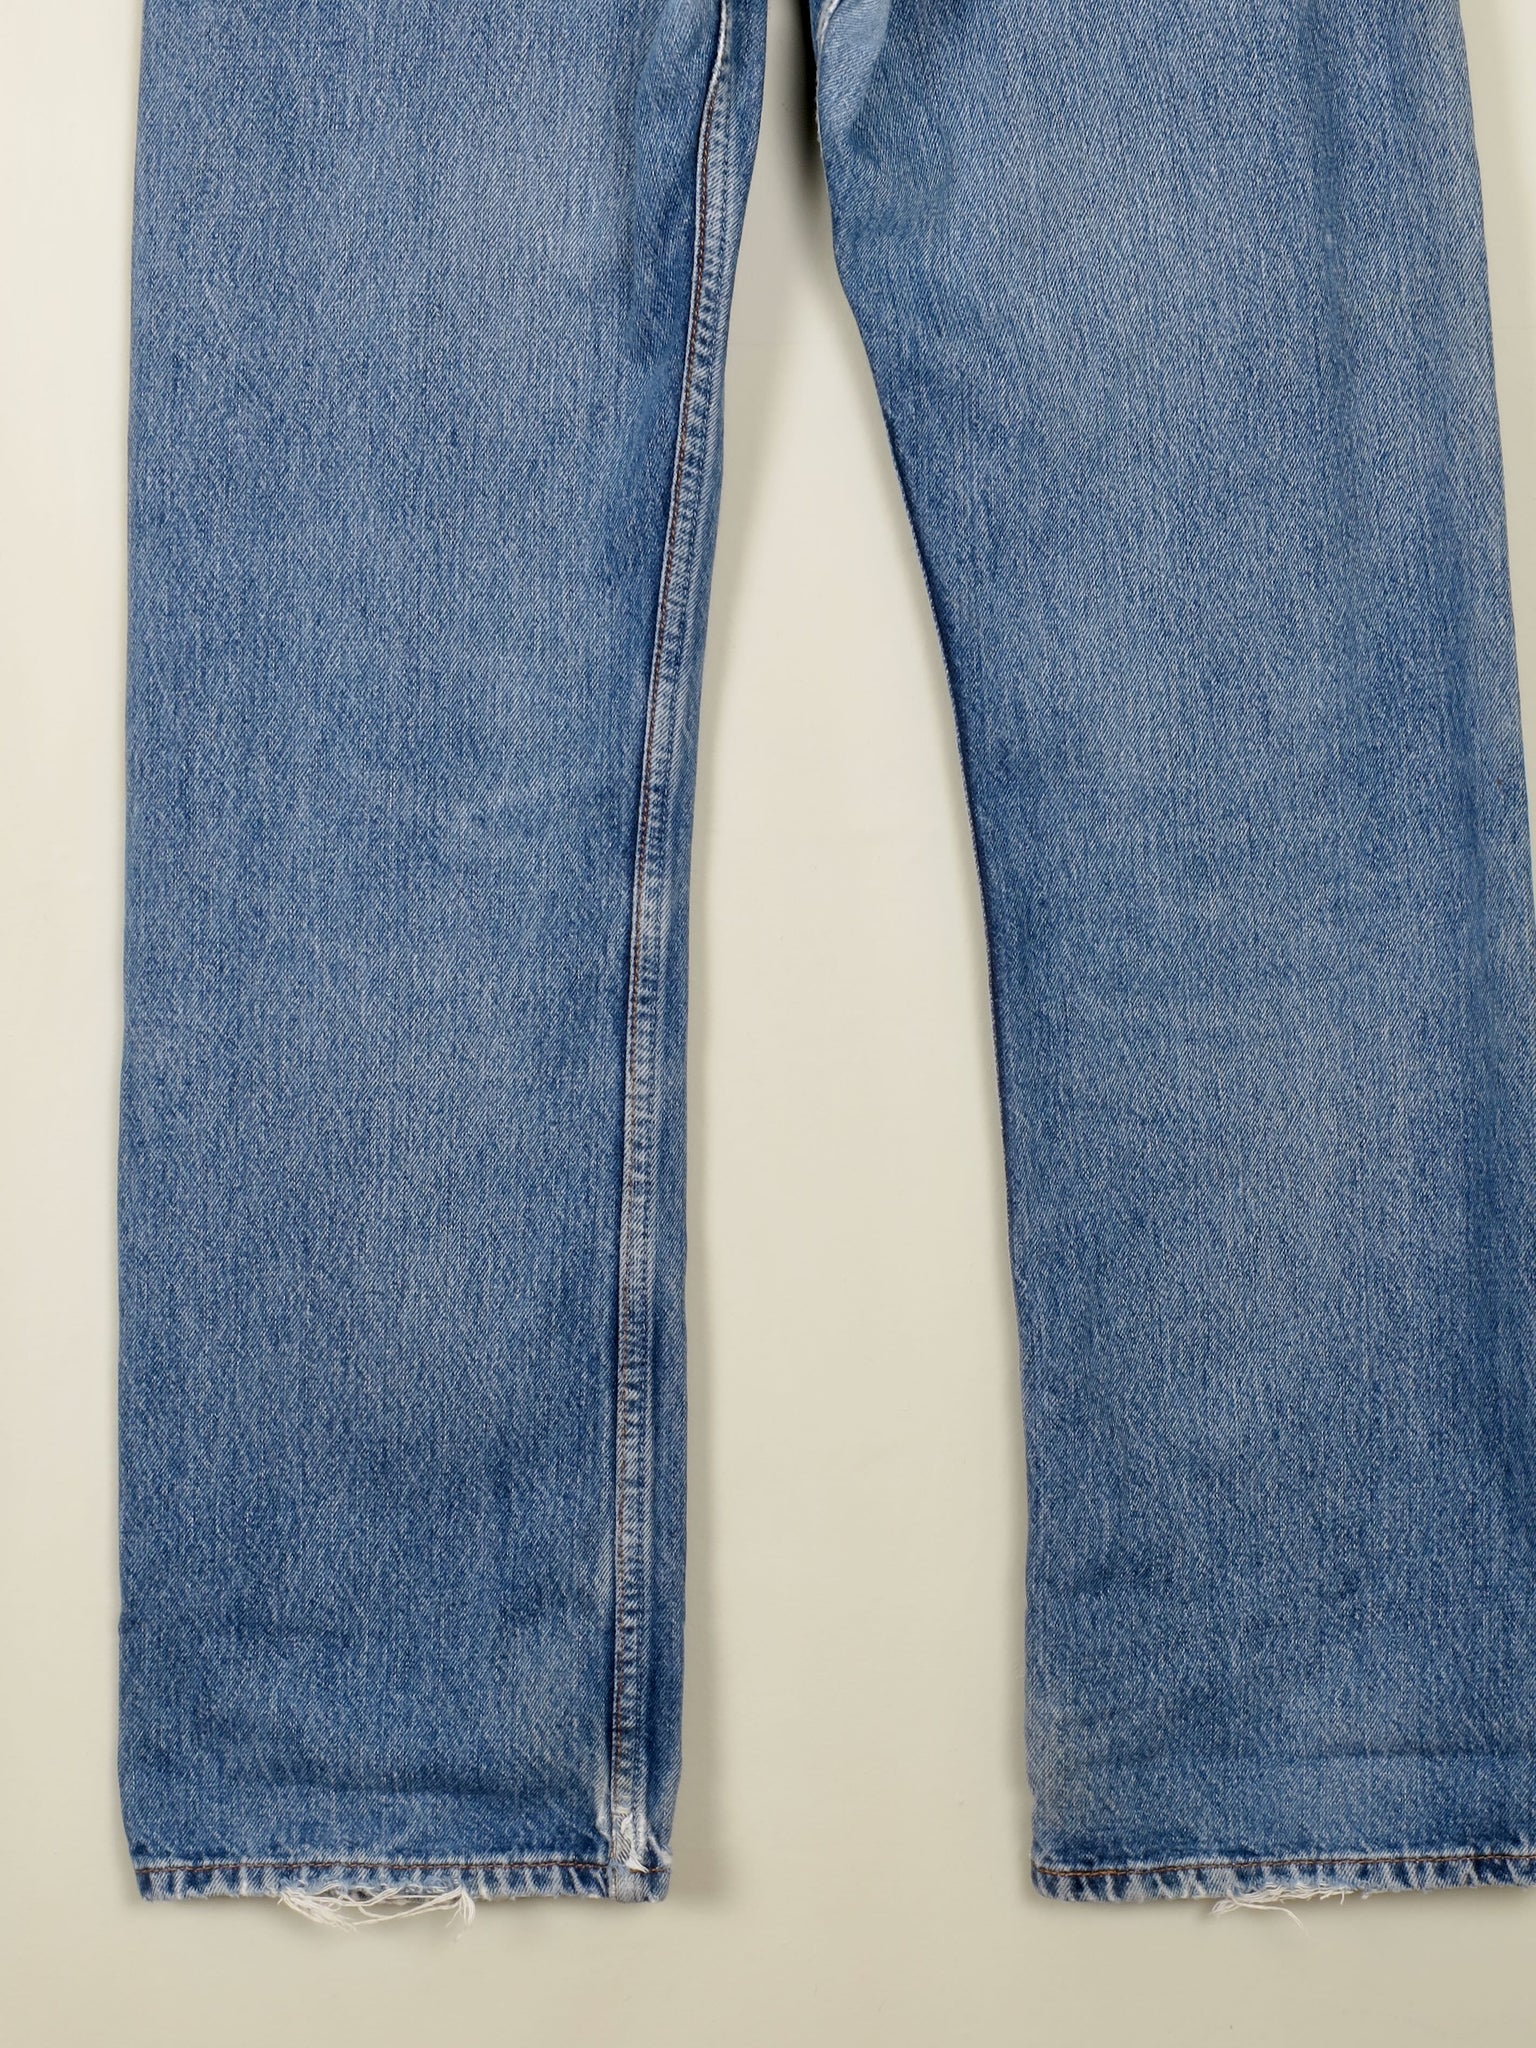 Men's Vintage Blue Levi’s Jeans 30/30 Relaxed  Fit